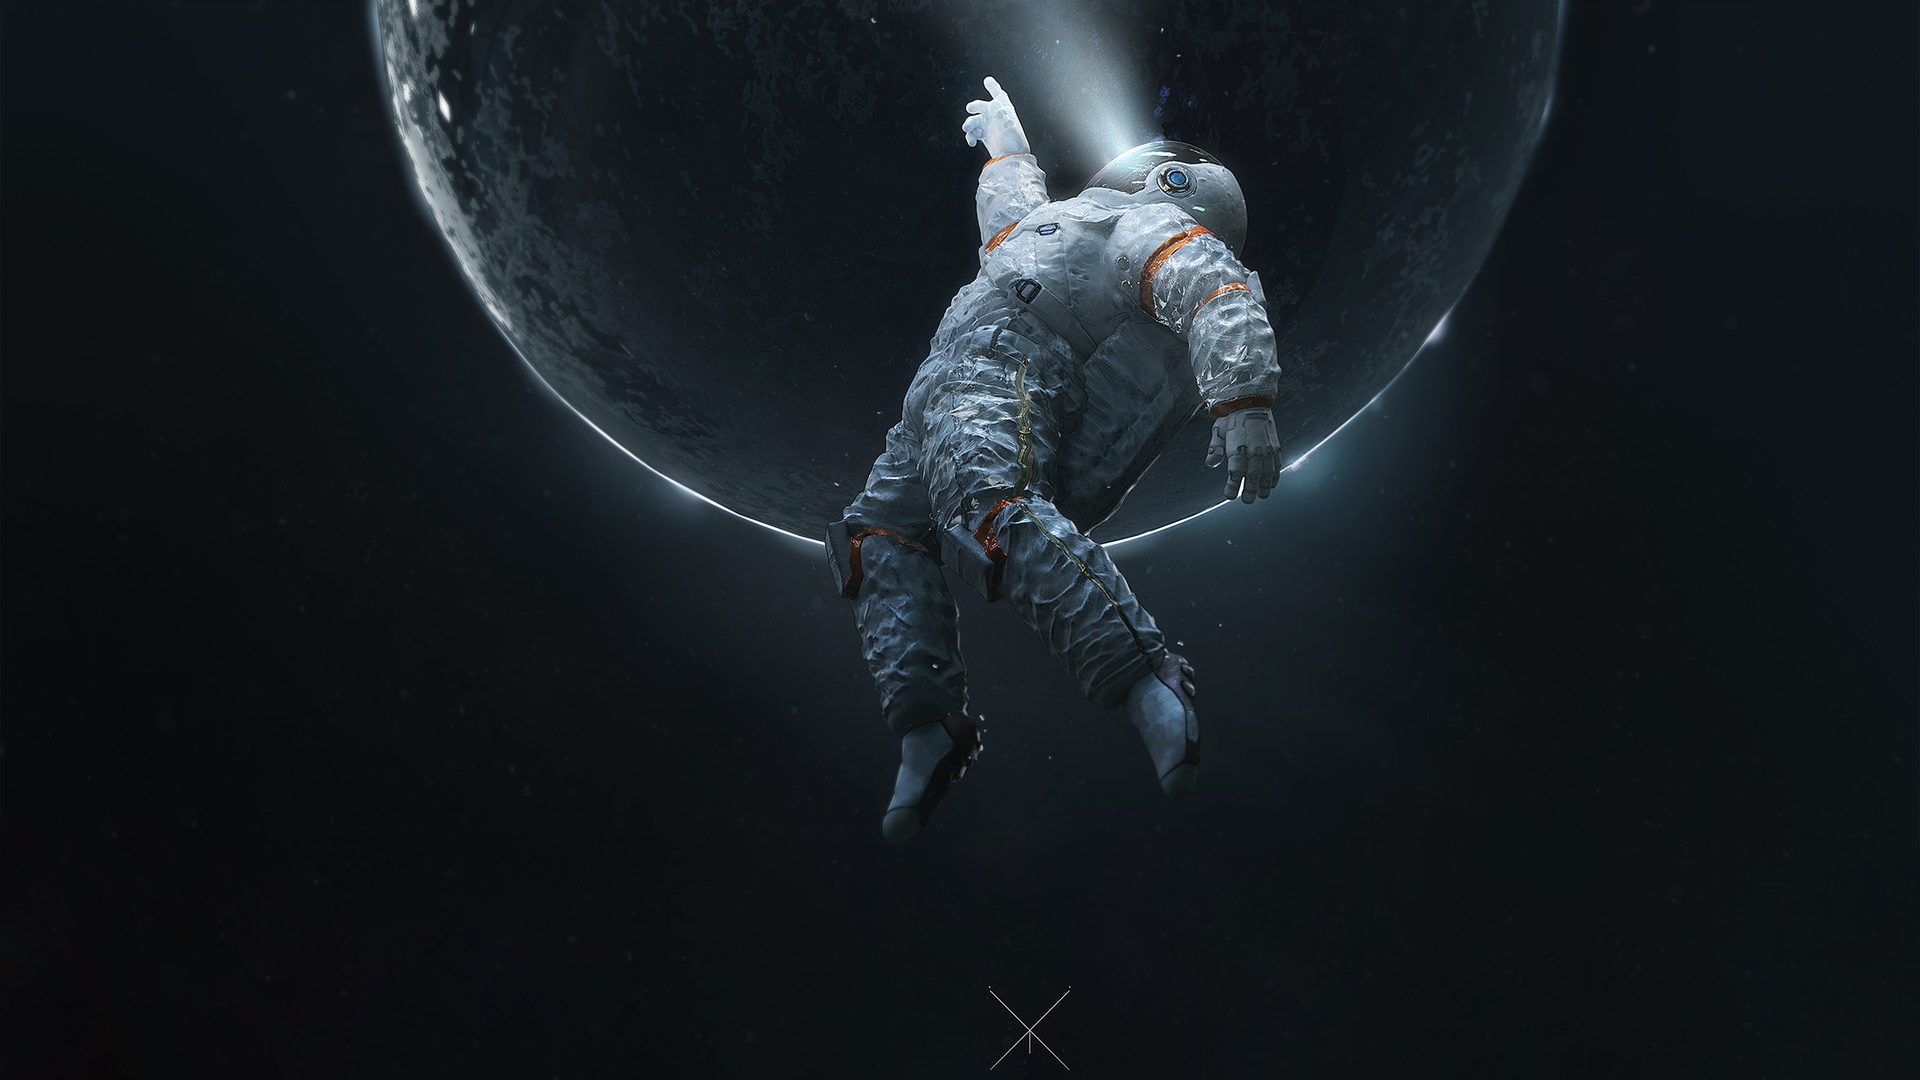 astronaut hd wallpaper widescreen